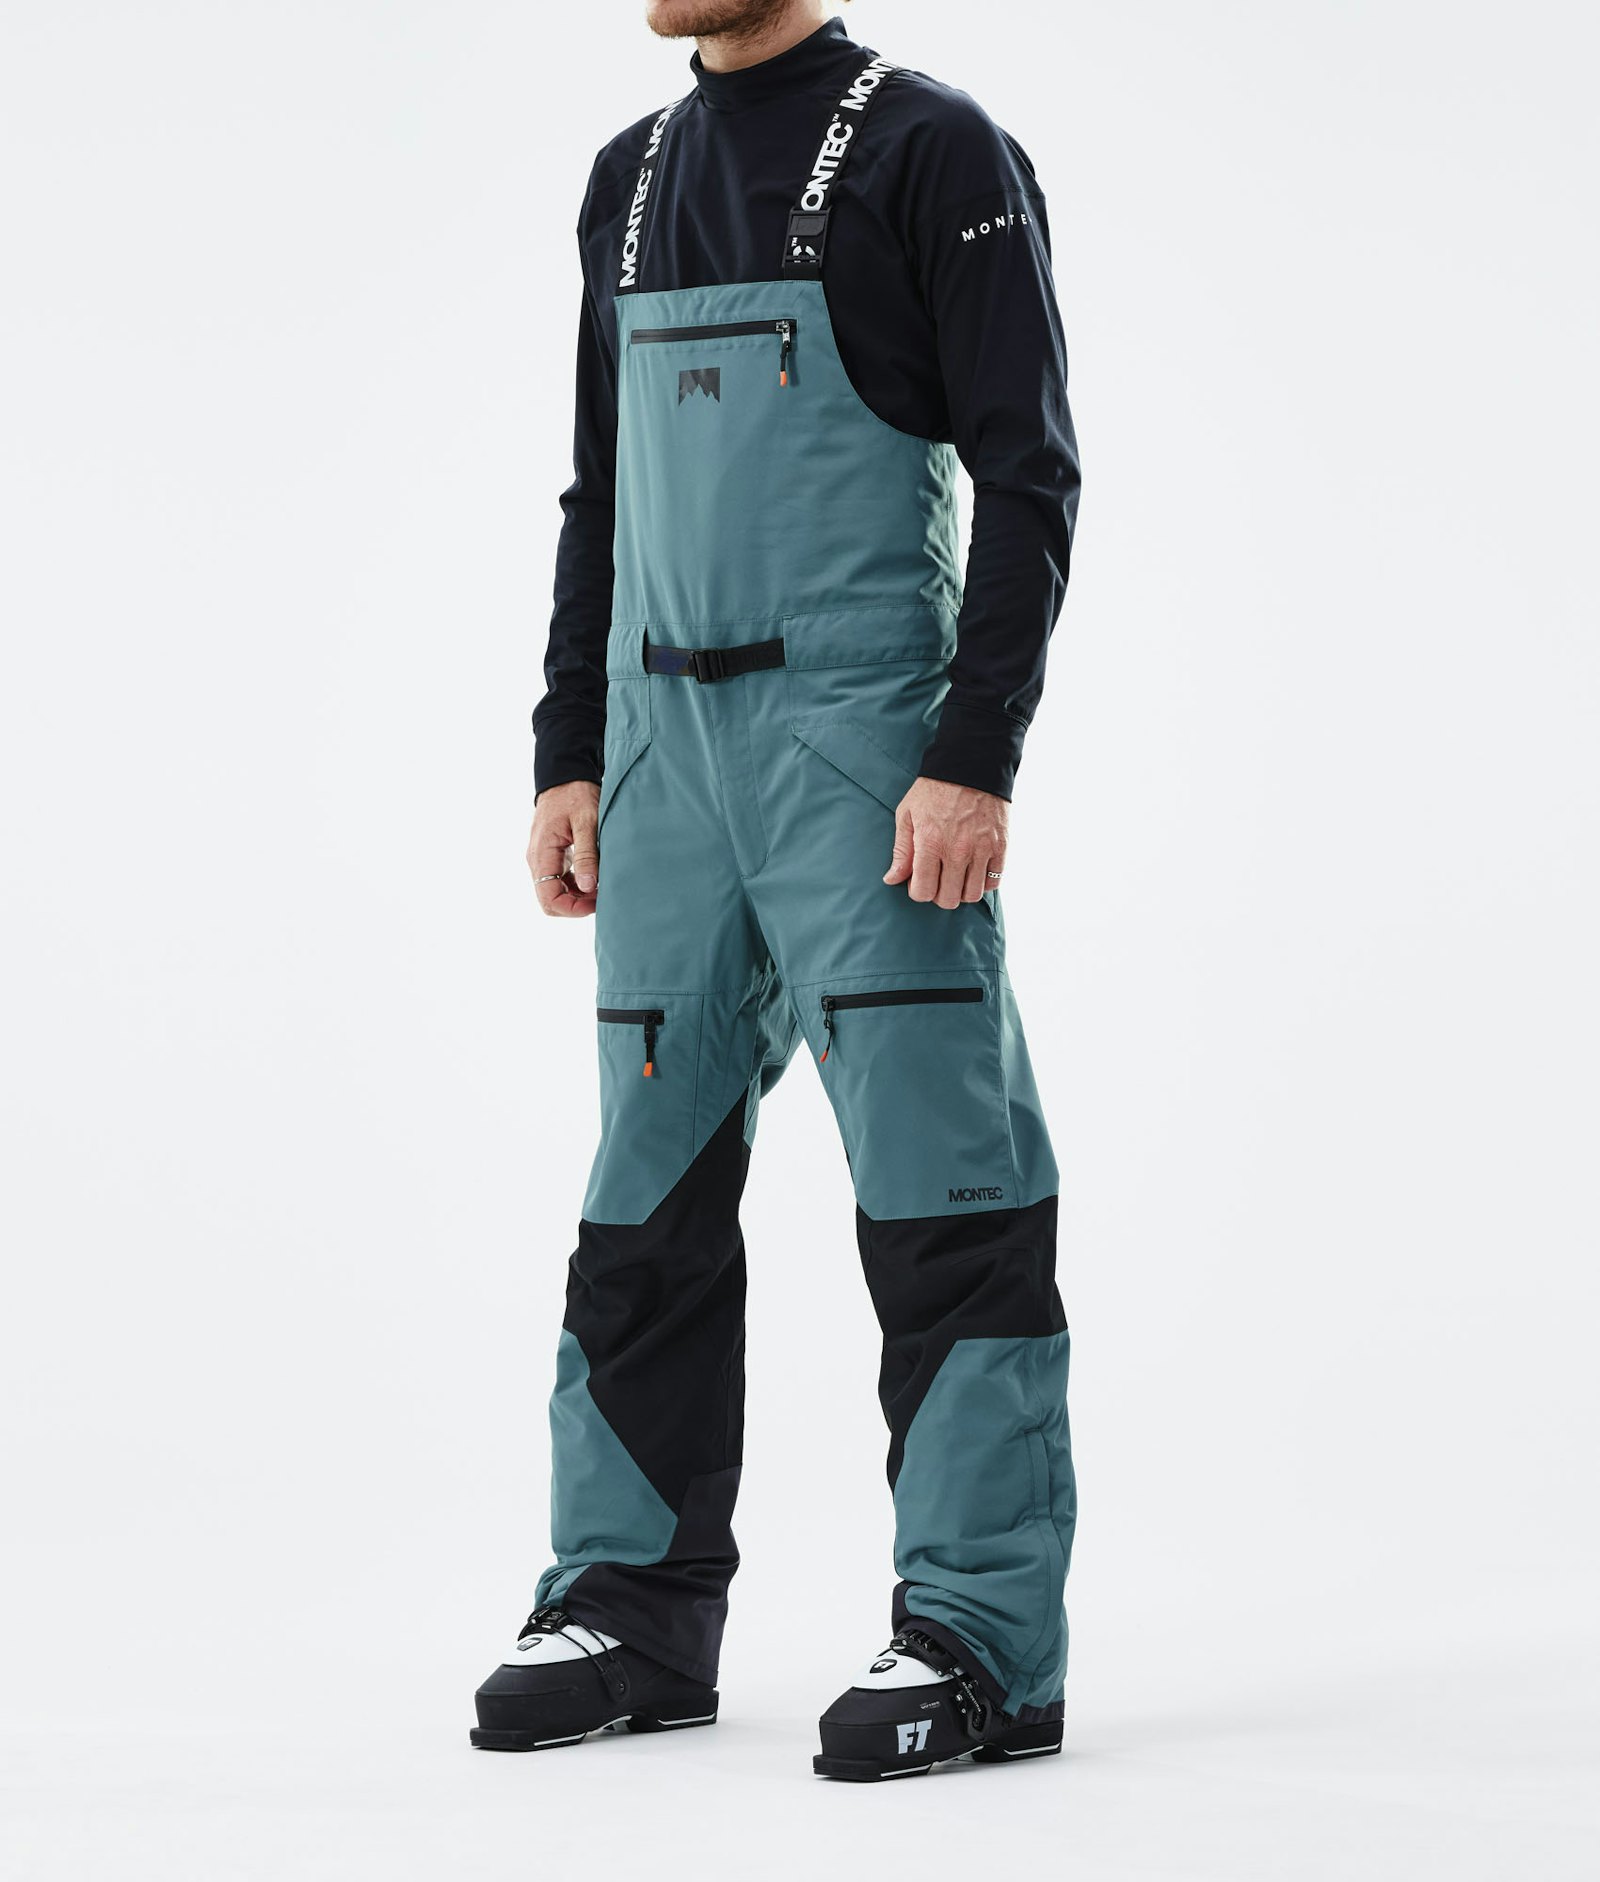 Moss 2021 Ski Pants Men Atlantic/Black, Image 1 of 6